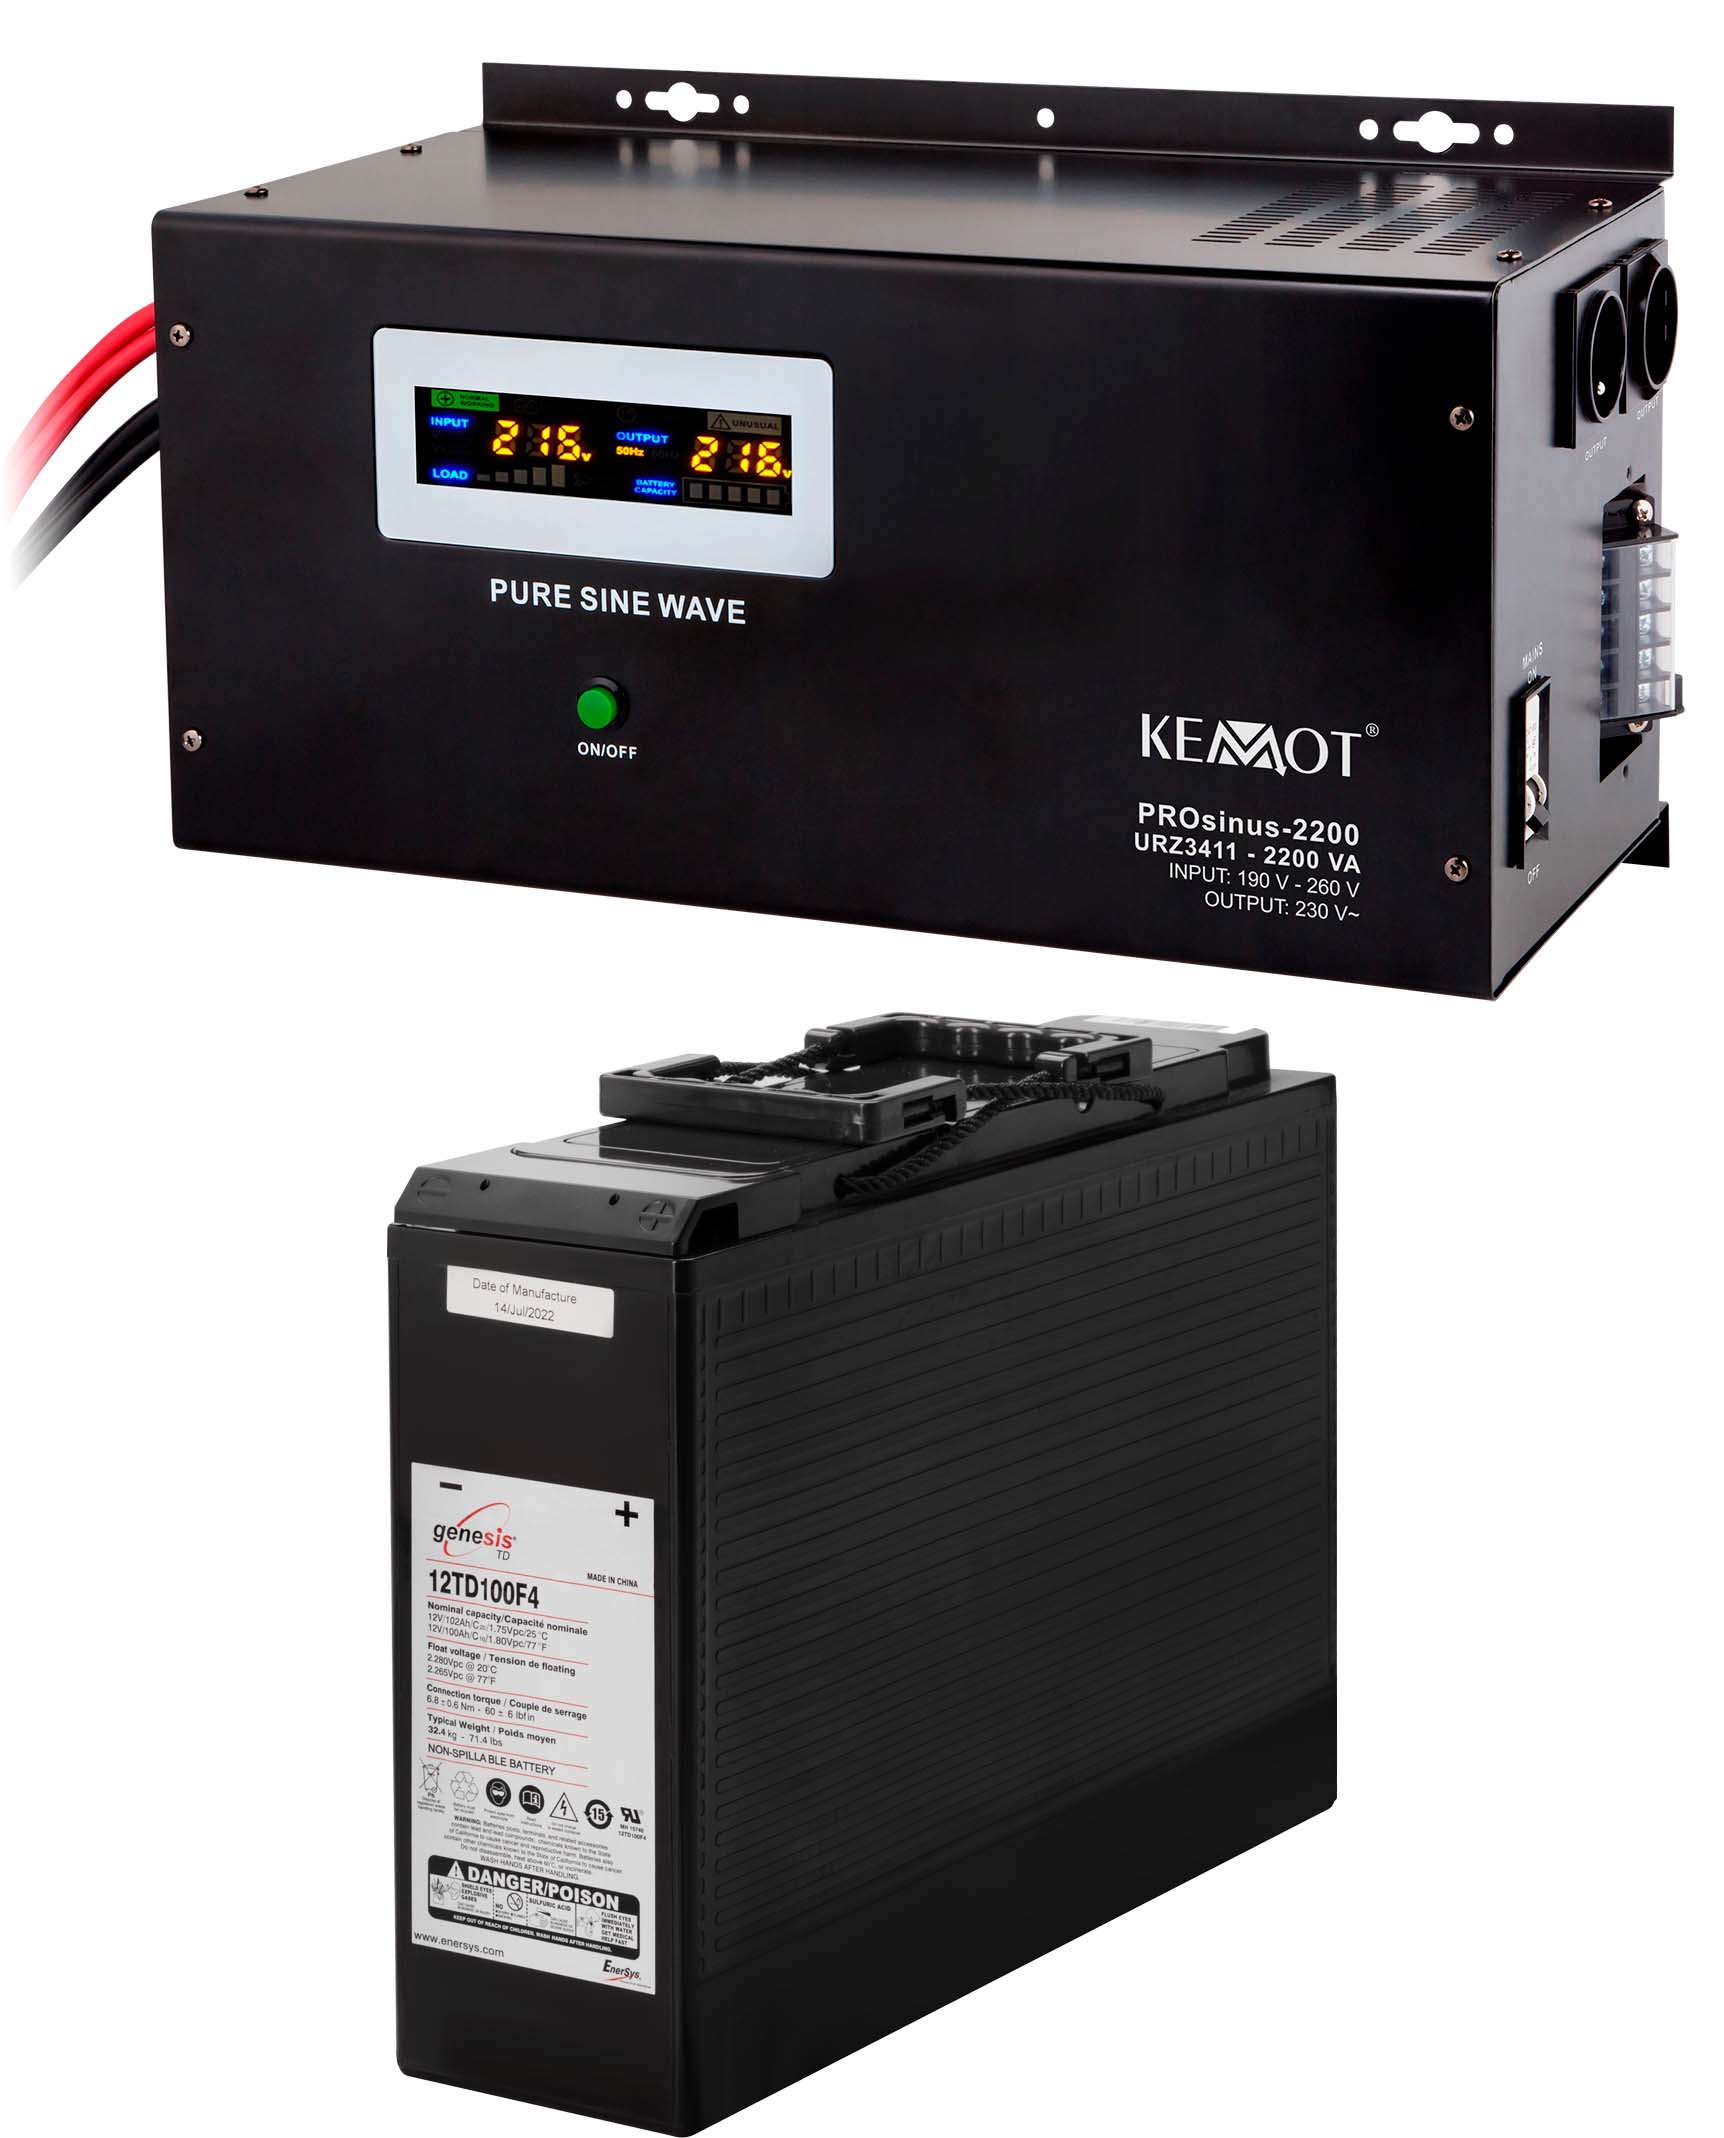 Джерело безперебійного живлення Kemot PROSinus-2200 (URZ3411)+акумулятор Genesis 12TD100F4 (12V100Ah)